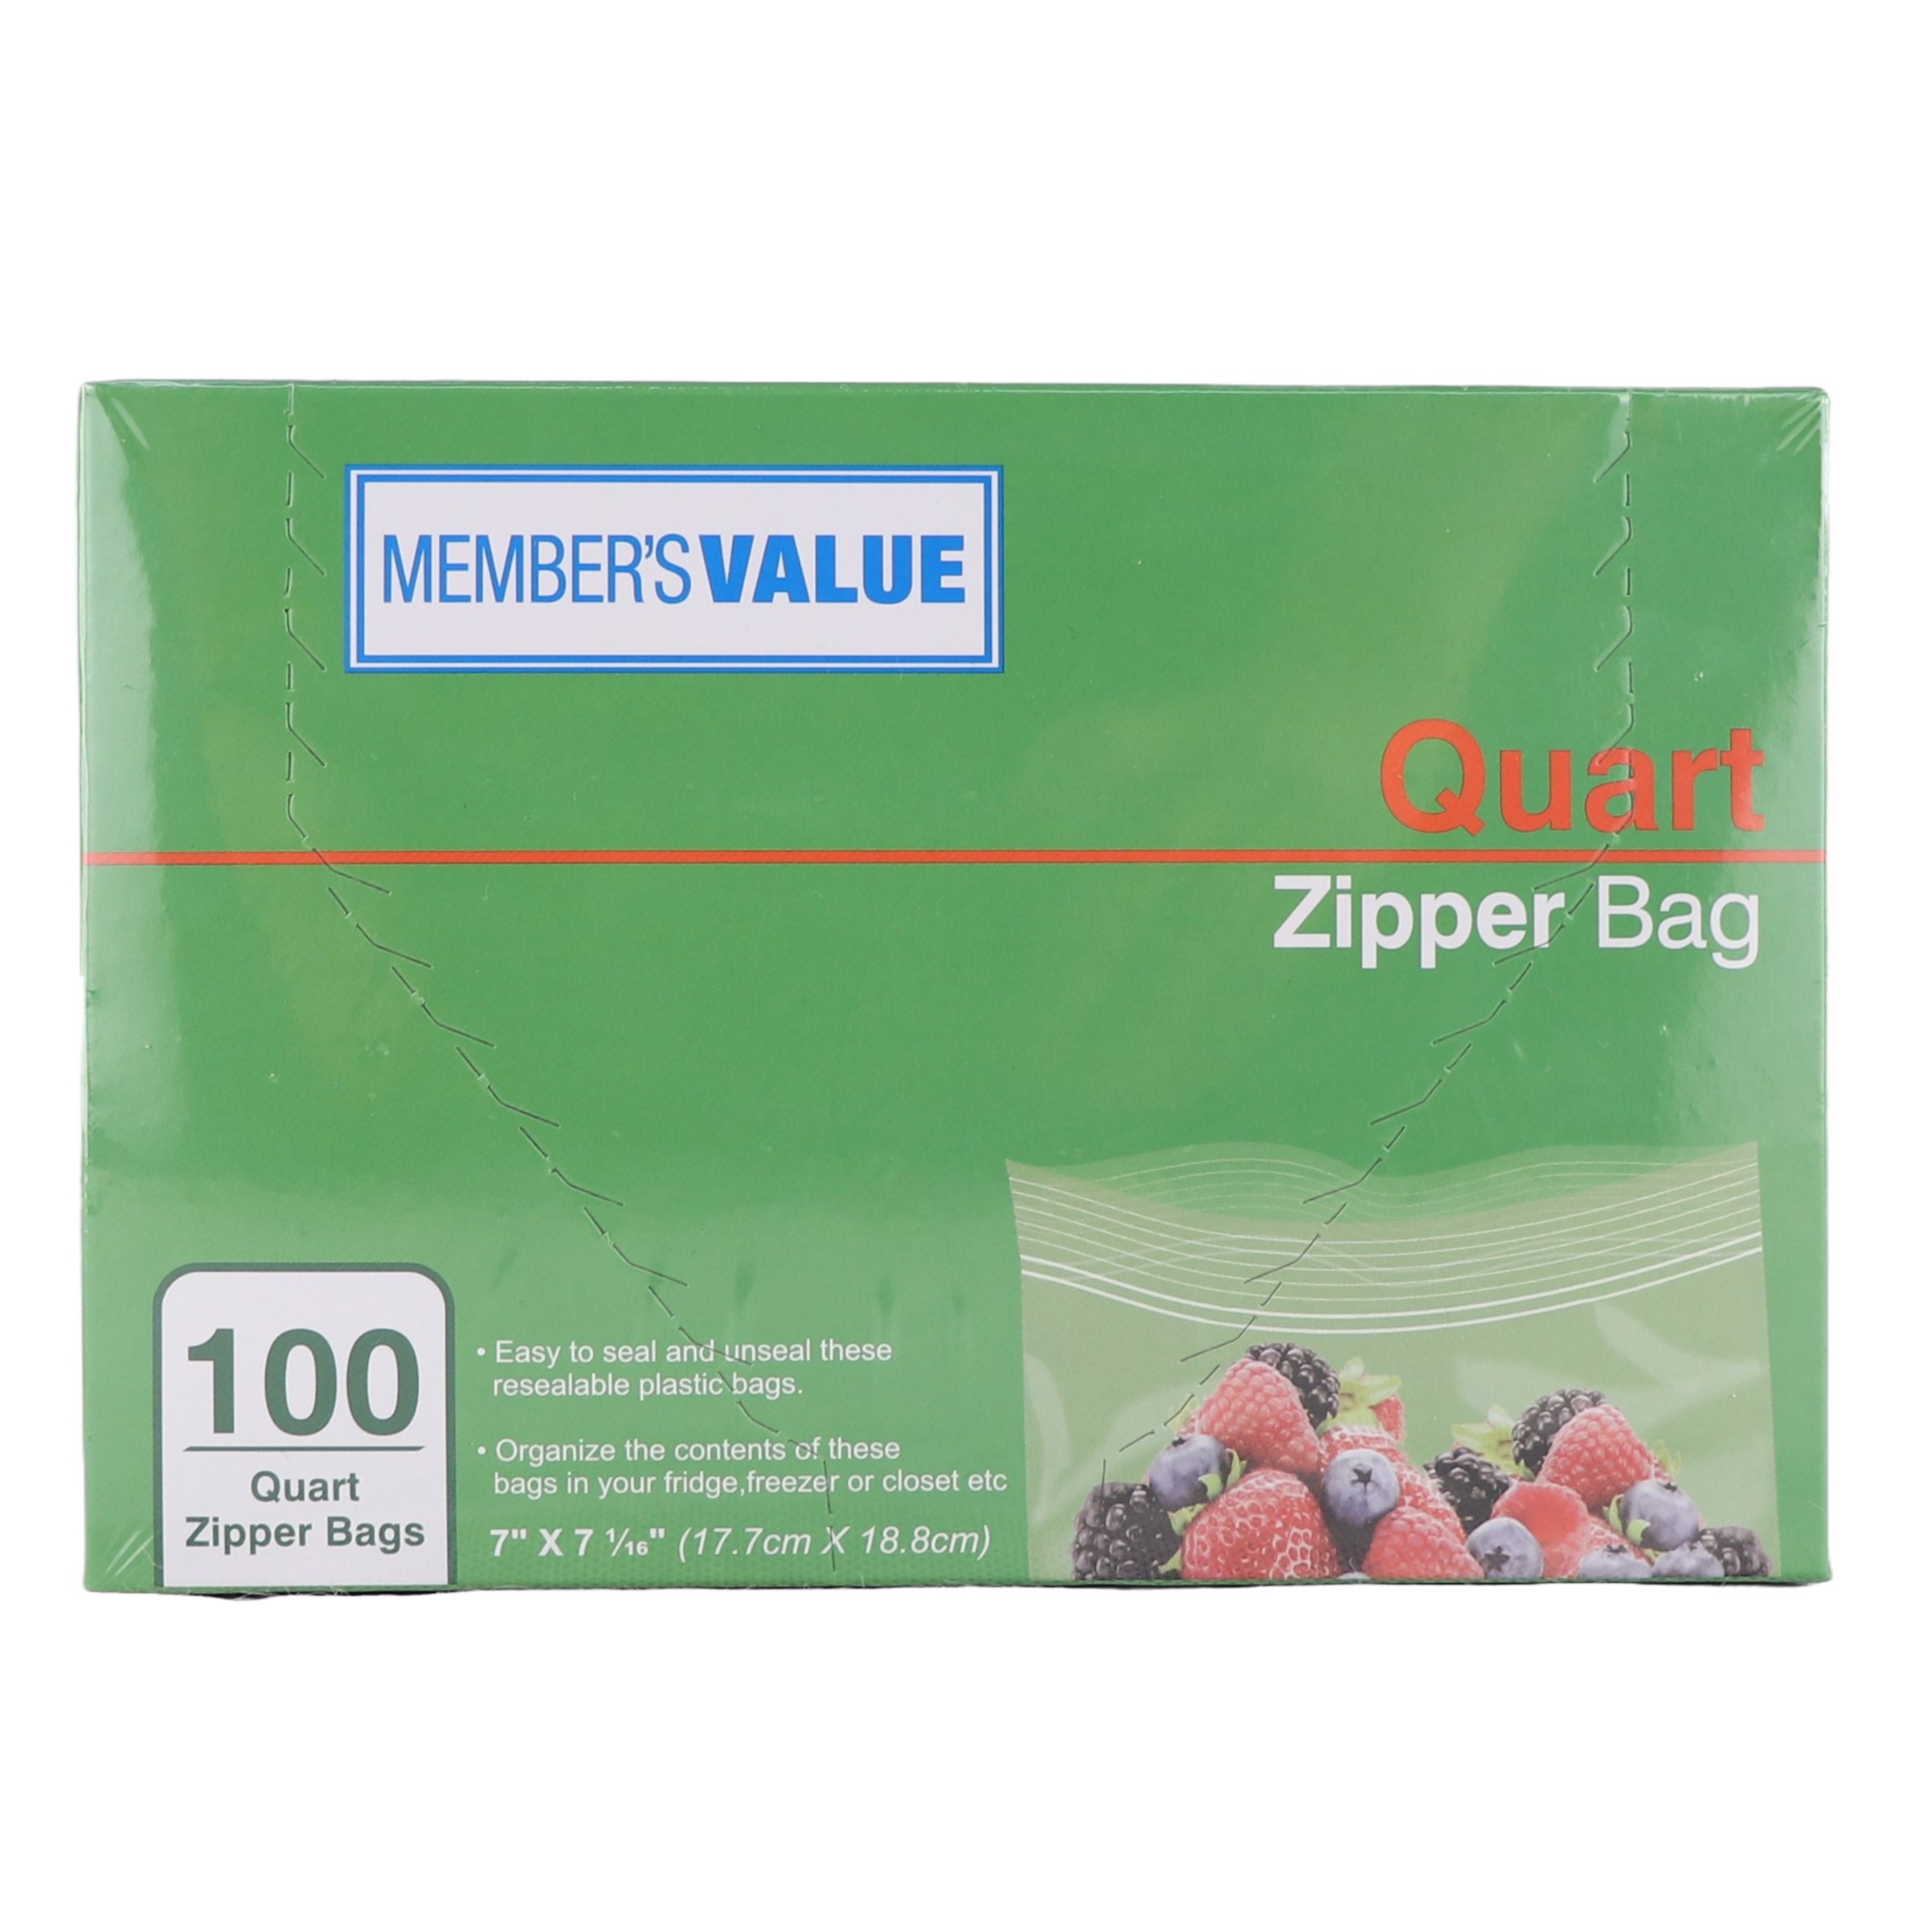 Member's Value Quart Zipper Bag 100pcs